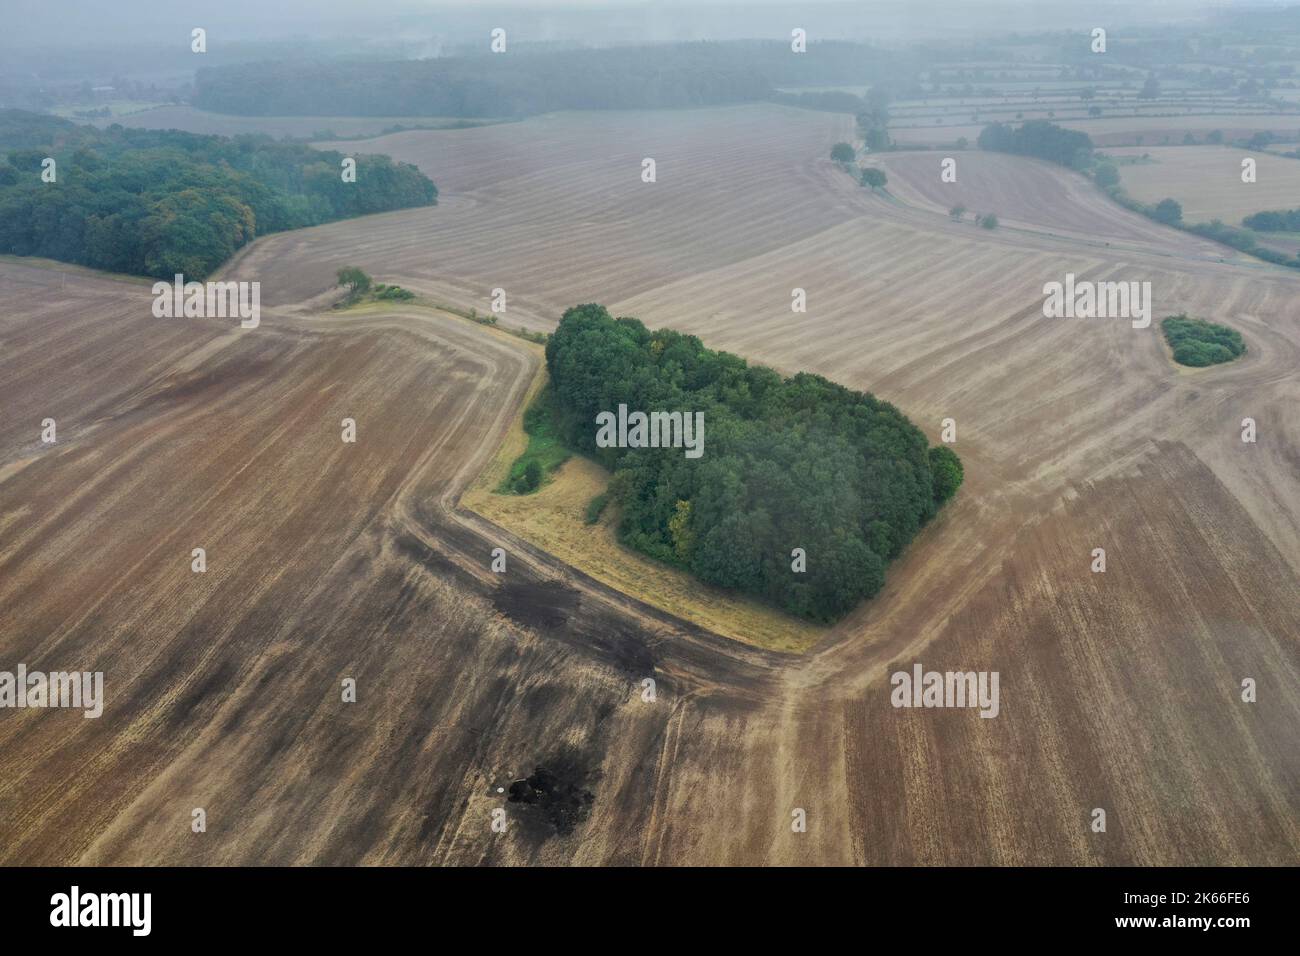 Islandisation, île forestière au milieu de champs sans lien direct avec les habitats intacts, Allemagne, Schleswig-Holstein Banque D'Images